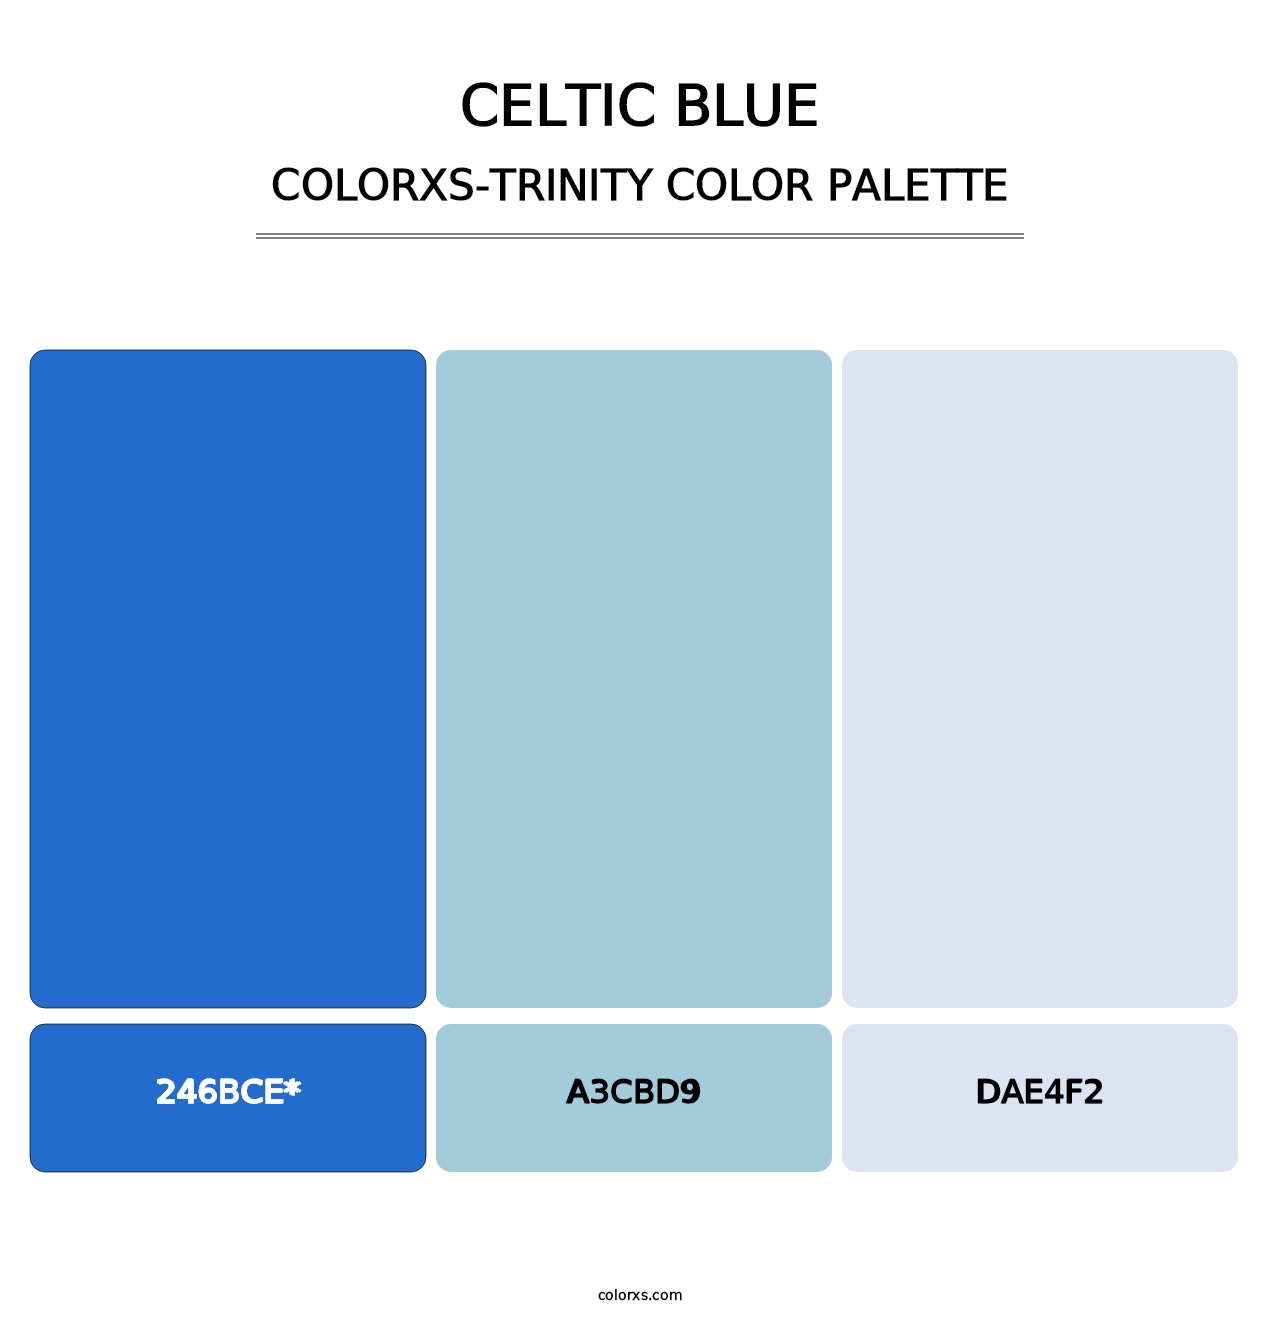 Celtic Blue - Colorxs Trinity Palette